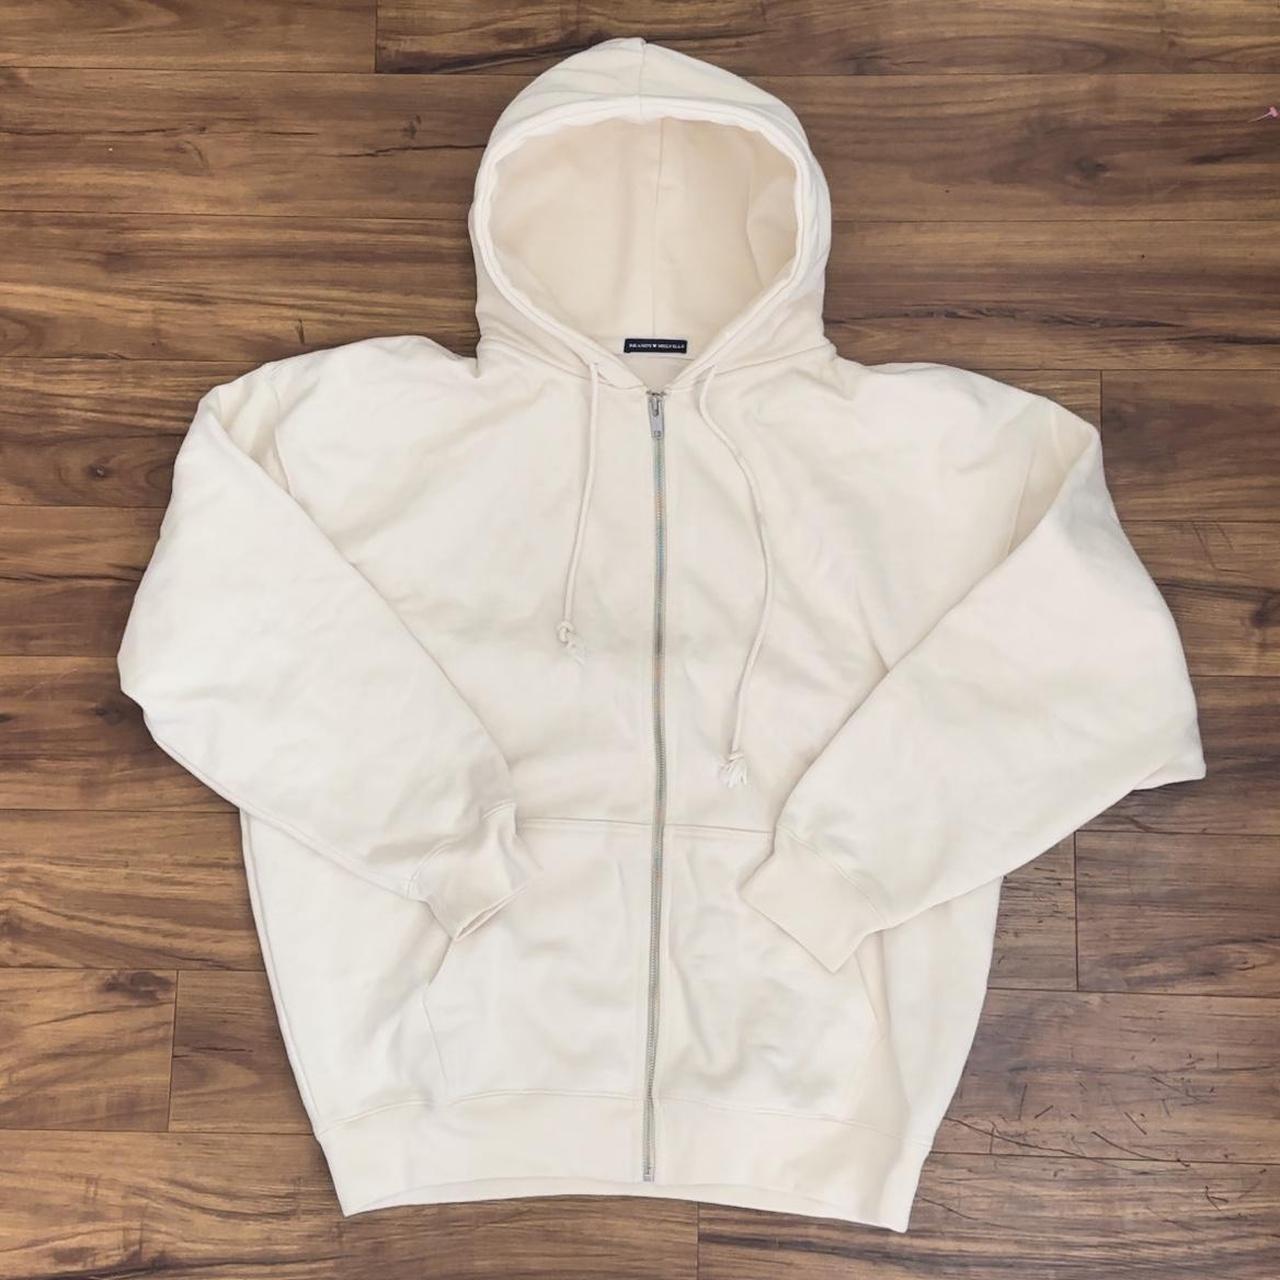 Brandy Melville zip up hoodie (L) - Depop